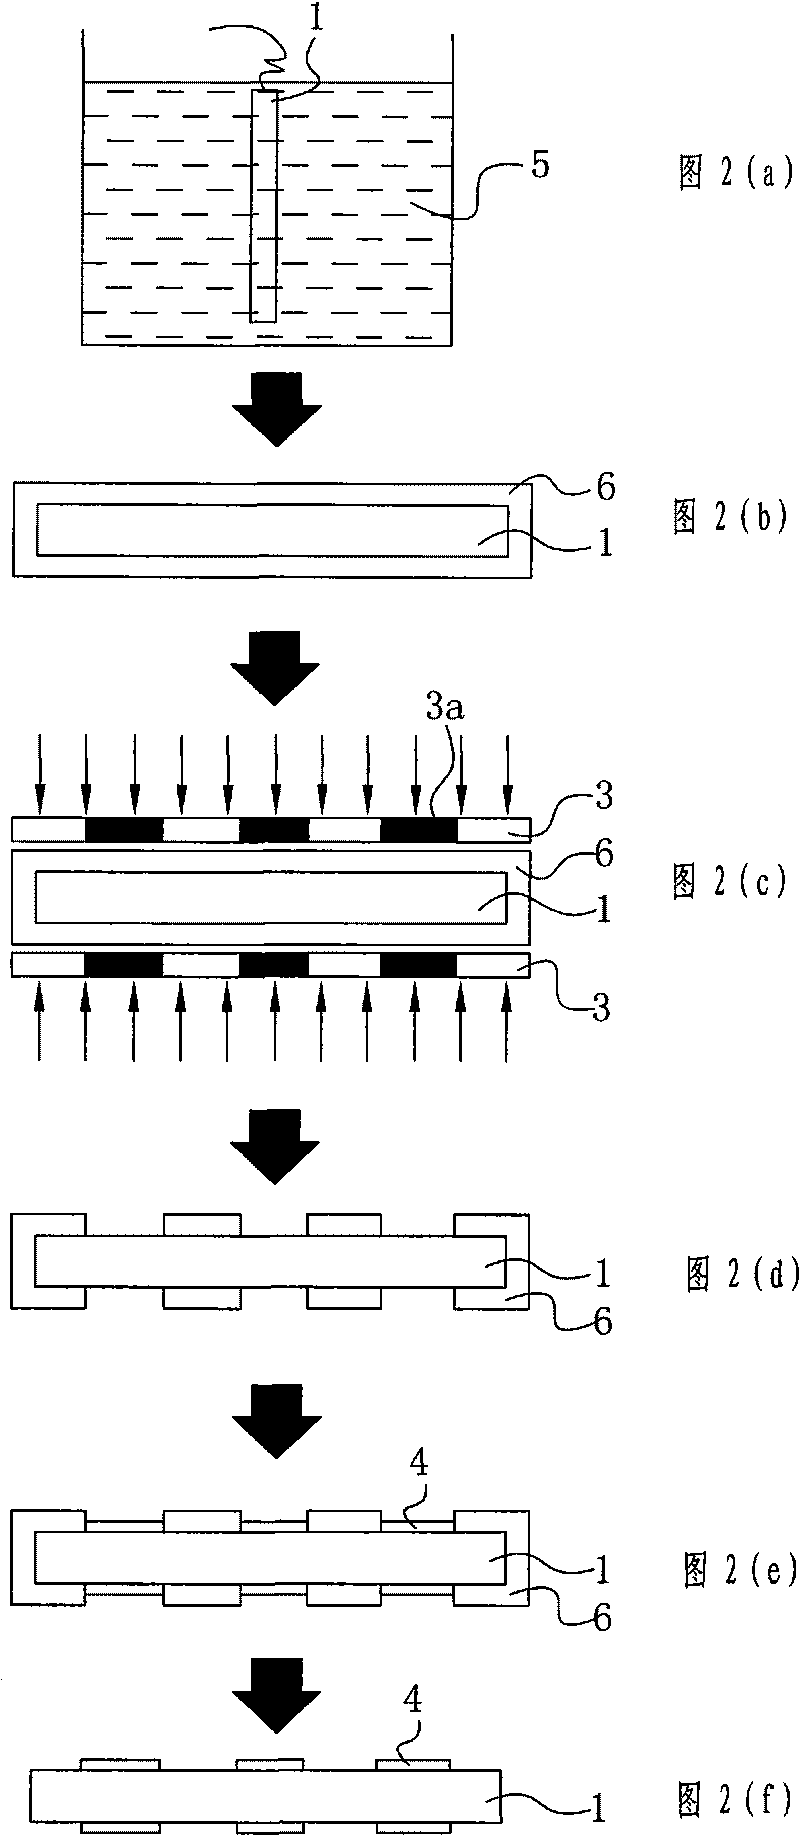 Method for electroplating lead frame